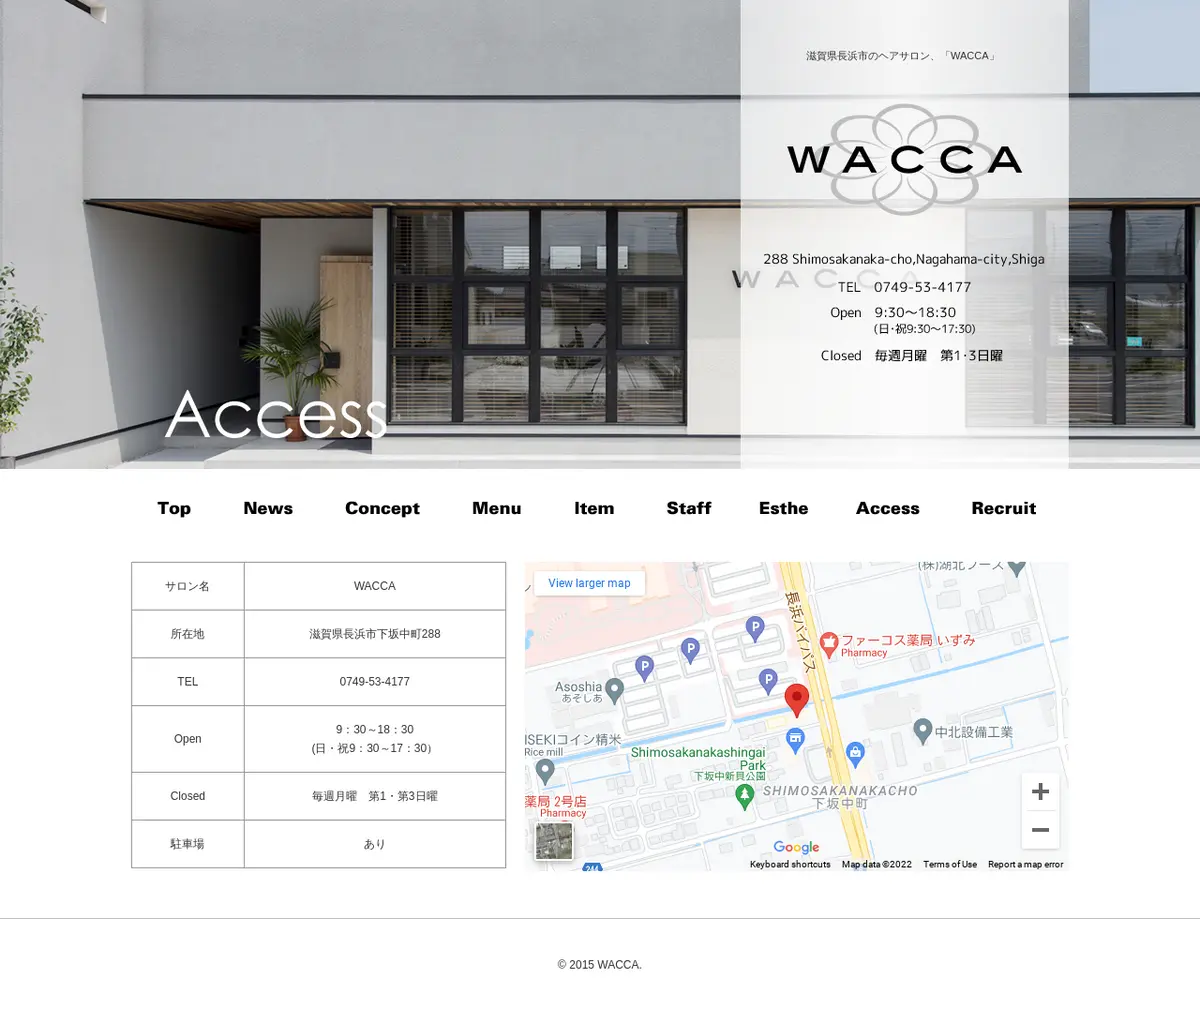 キャプチャ画面 会社名:WACCAプロジェクト名:WACCA 画面名:アクセス・地図・マップ詳細 デバイス名:PCカテゴリ:美容・化粧・エステタグ:PC,アクセス・地図・マップ詳細